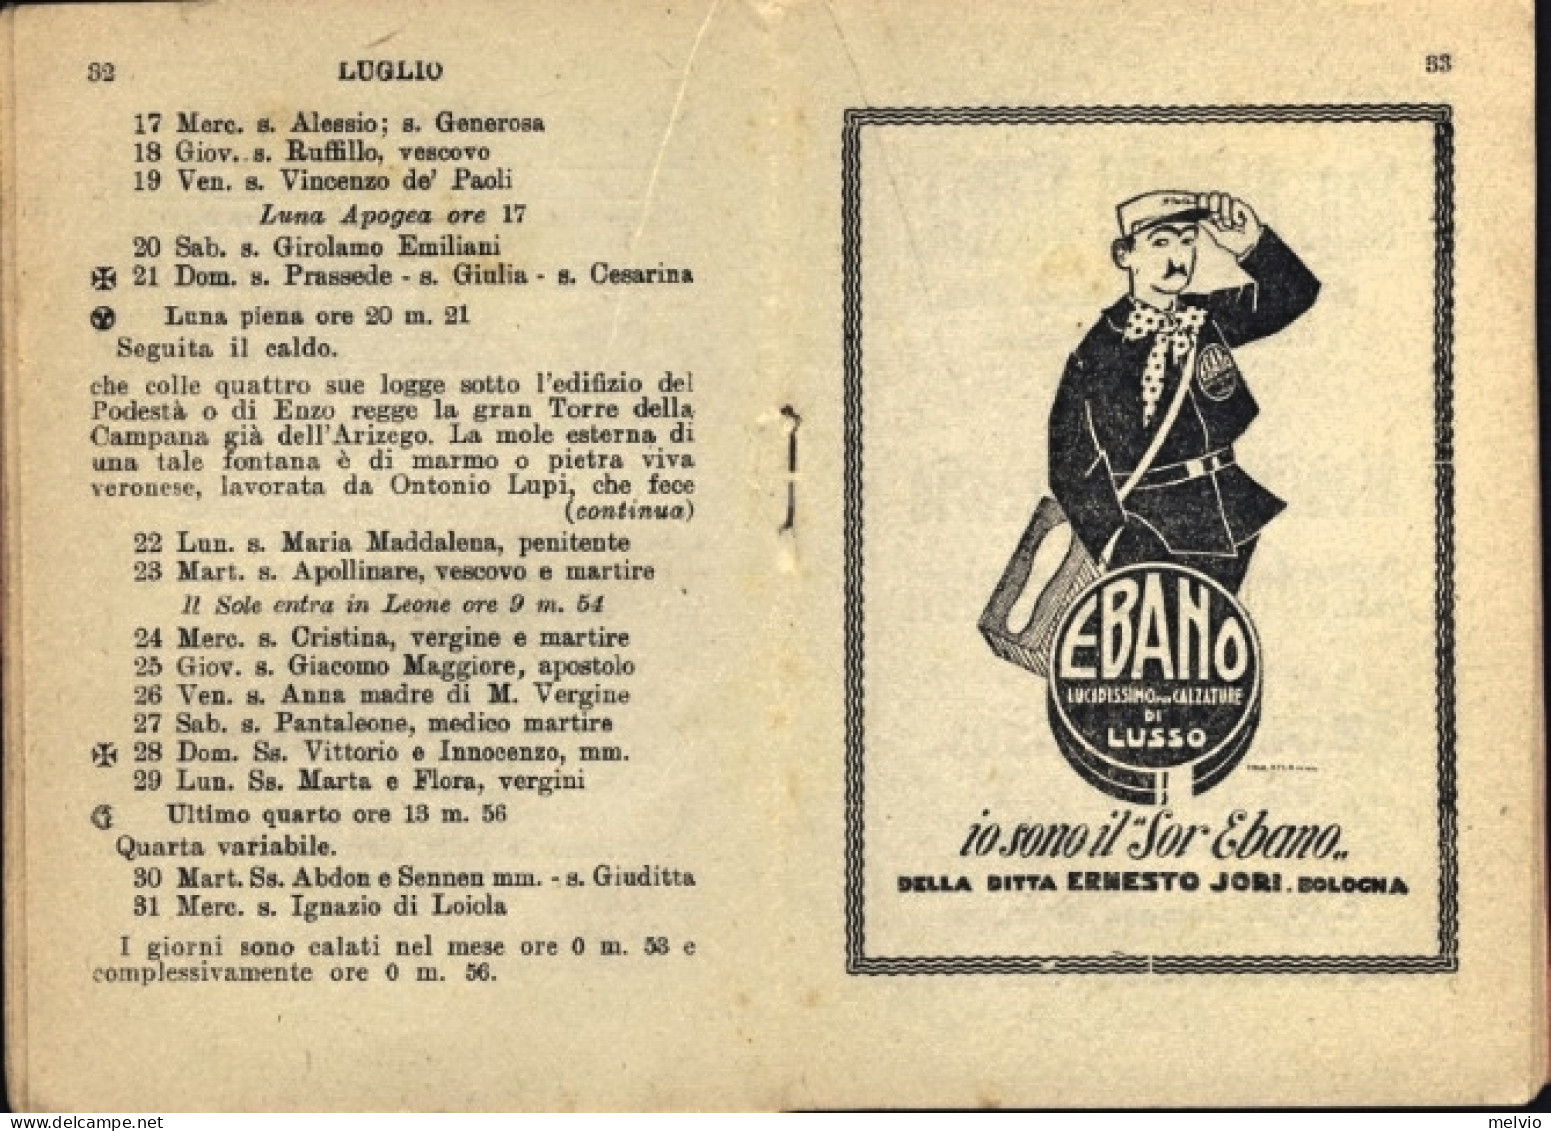 1929-almanacco Cattolico Barba Nera Libretto Di 64 Pagine Con Varie Illustrazion - Small : 1921-40